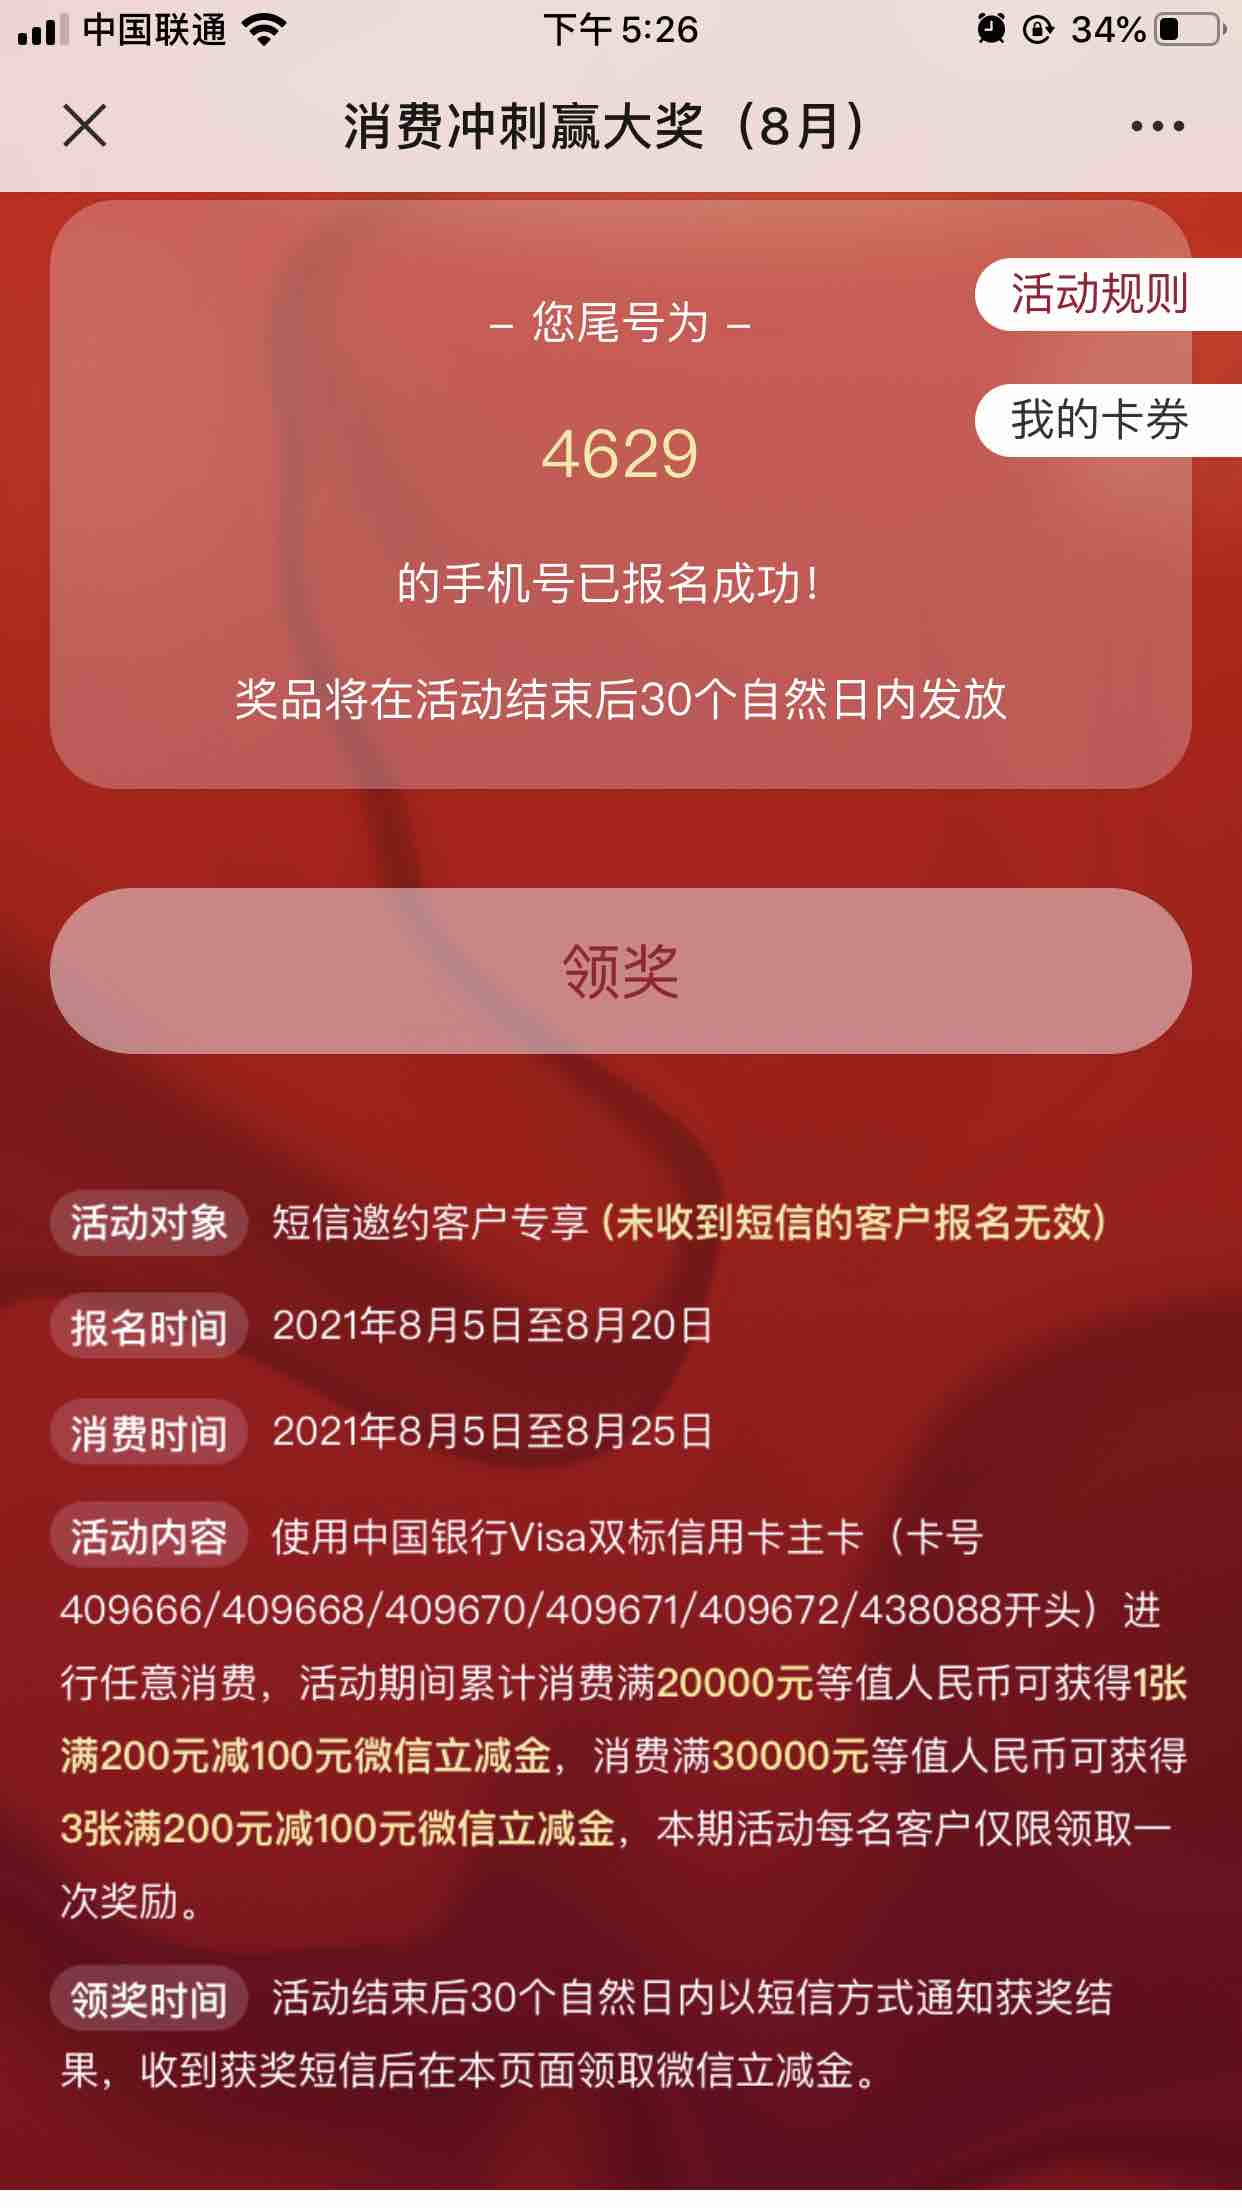 快看看短信-中国银行xing/用卡双标卡-300元大毛-惠小助(52huixz.com)